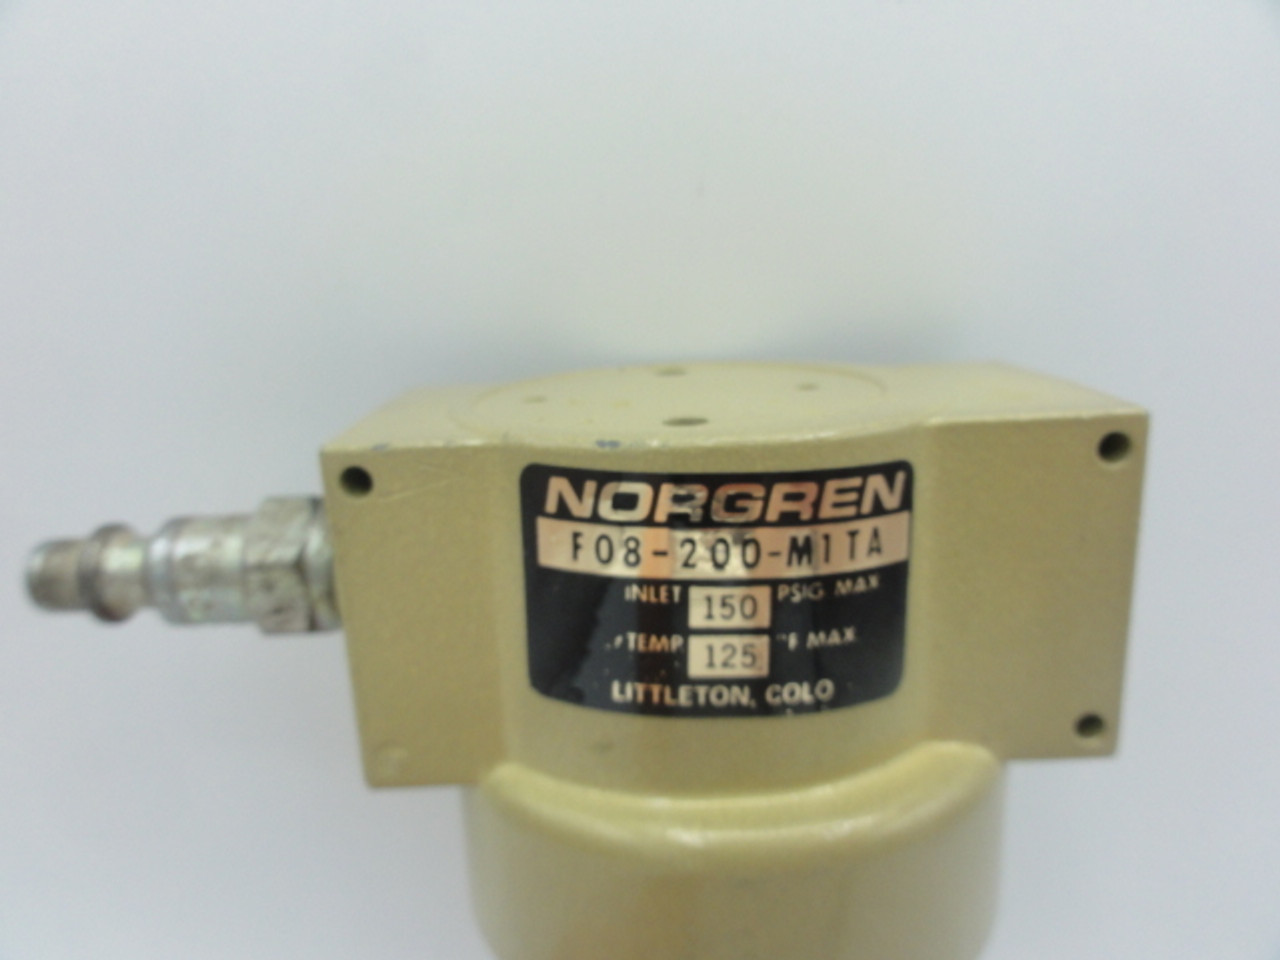 Norgren F08-200-M1TA Pneumatic Filter 150 psig, 125F Max